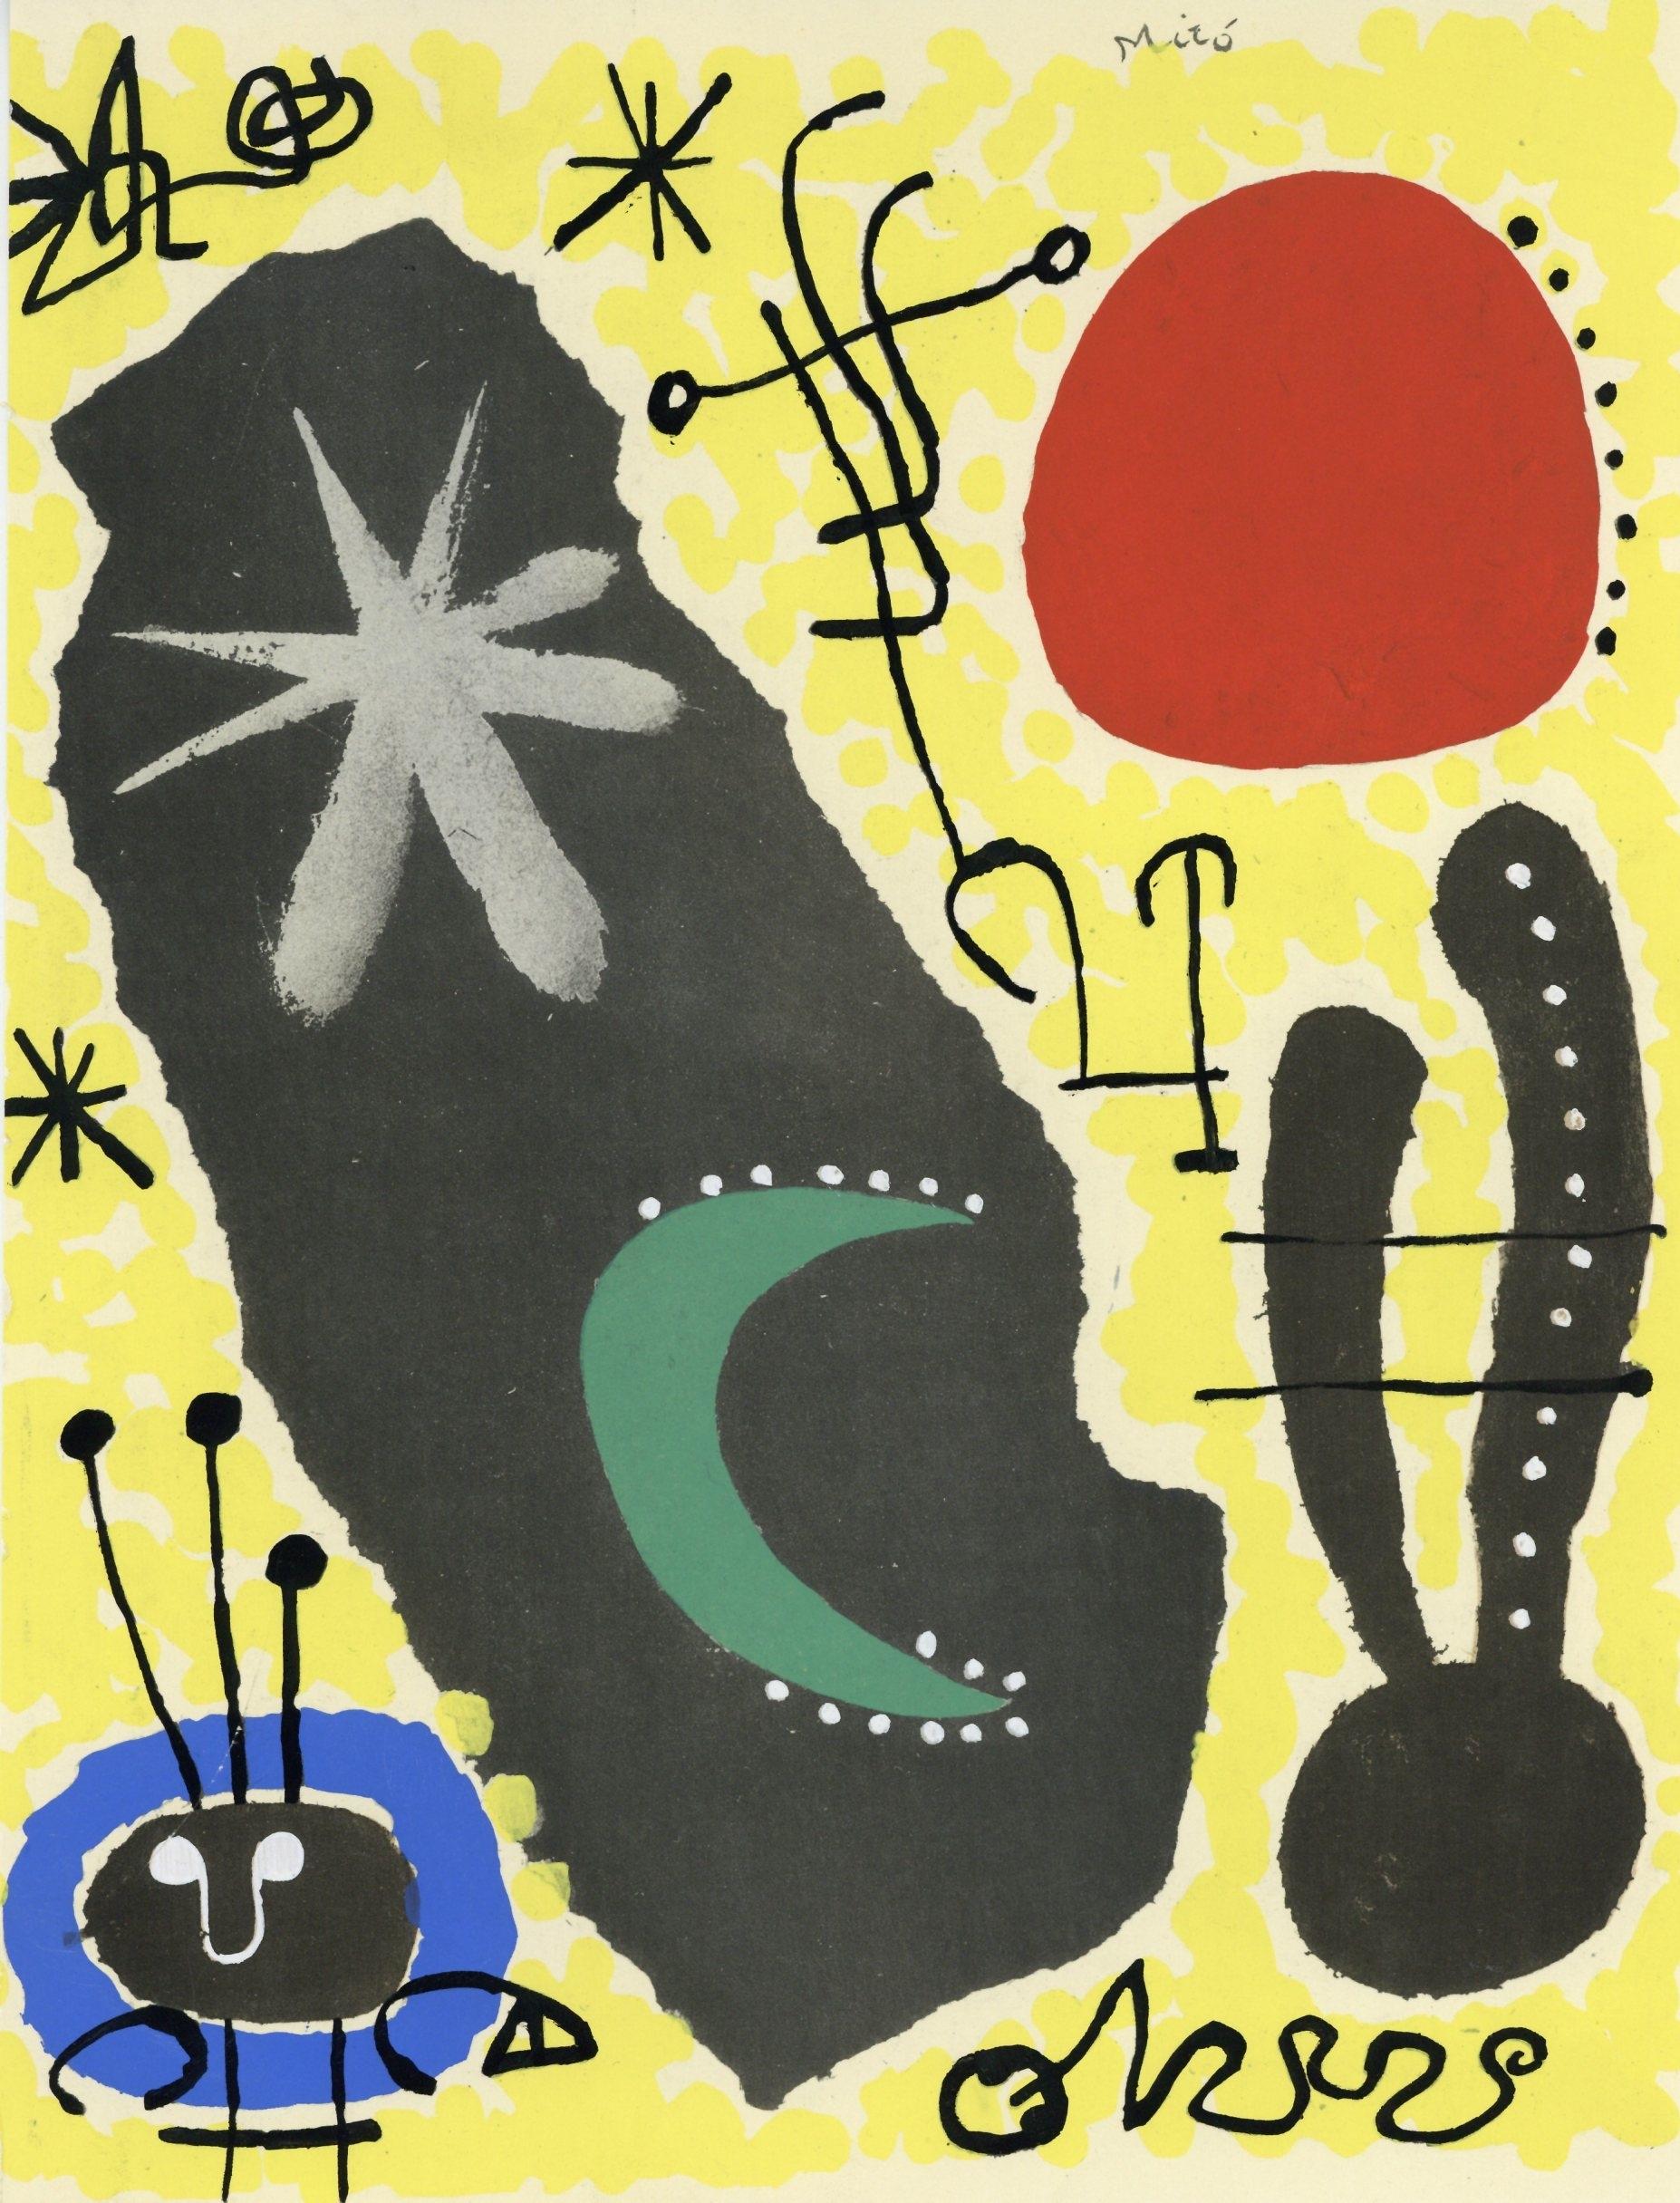 Miró, Papier collé, XXe Siècle (after)